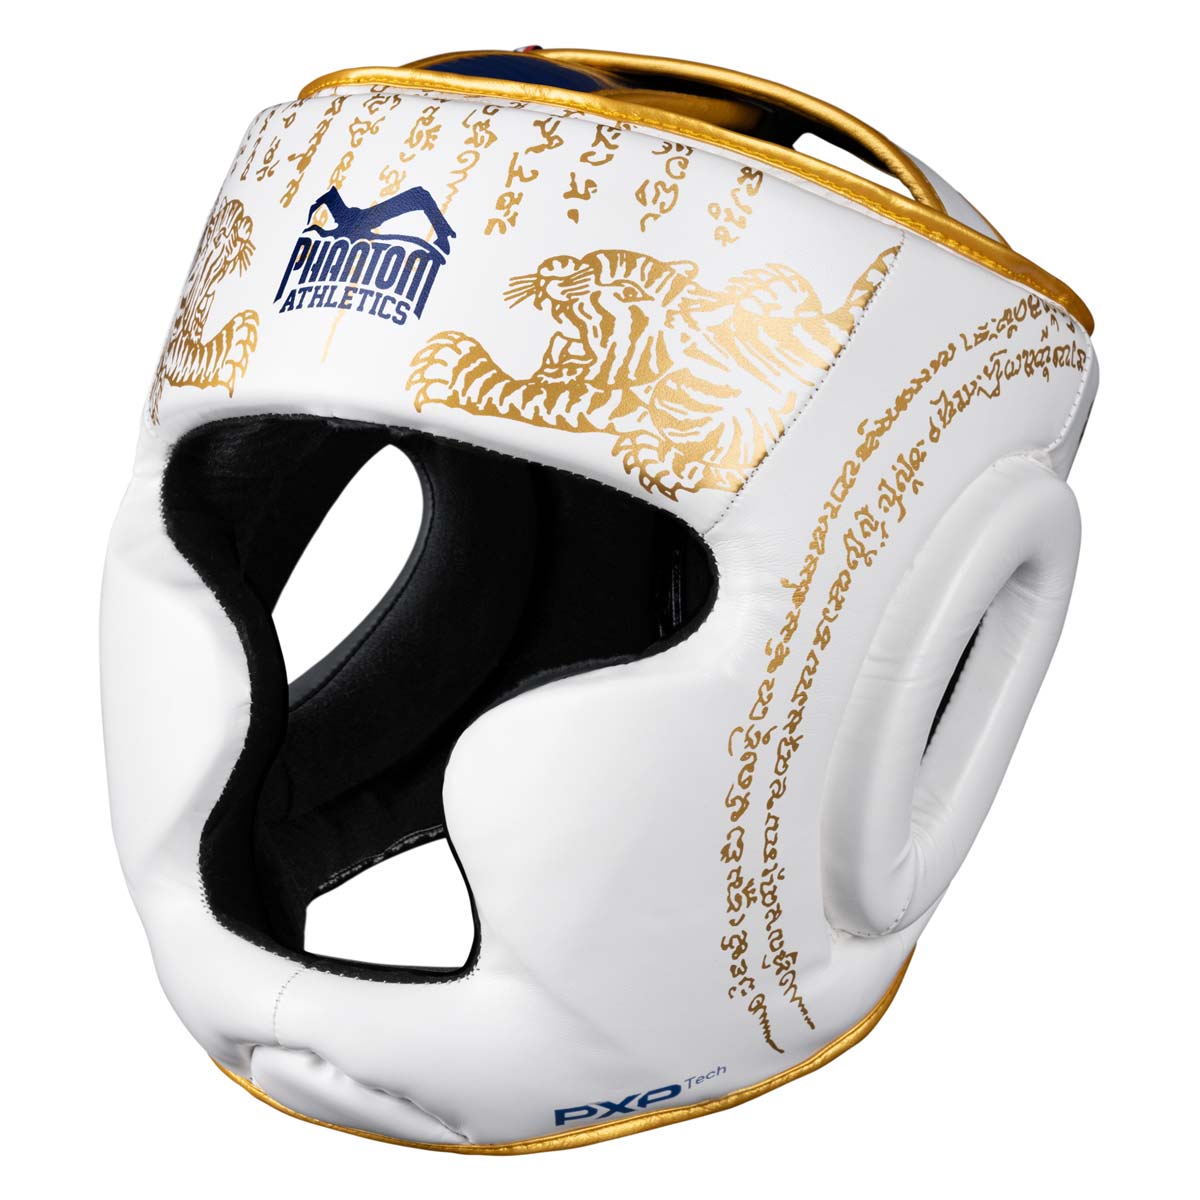 Protección de cabeza Phantom Muay Thai para combate, competición y entrenamiento de boxeo tailandés y MMA. En el diseño tradicional Sak Yant y en color blanco/oro.